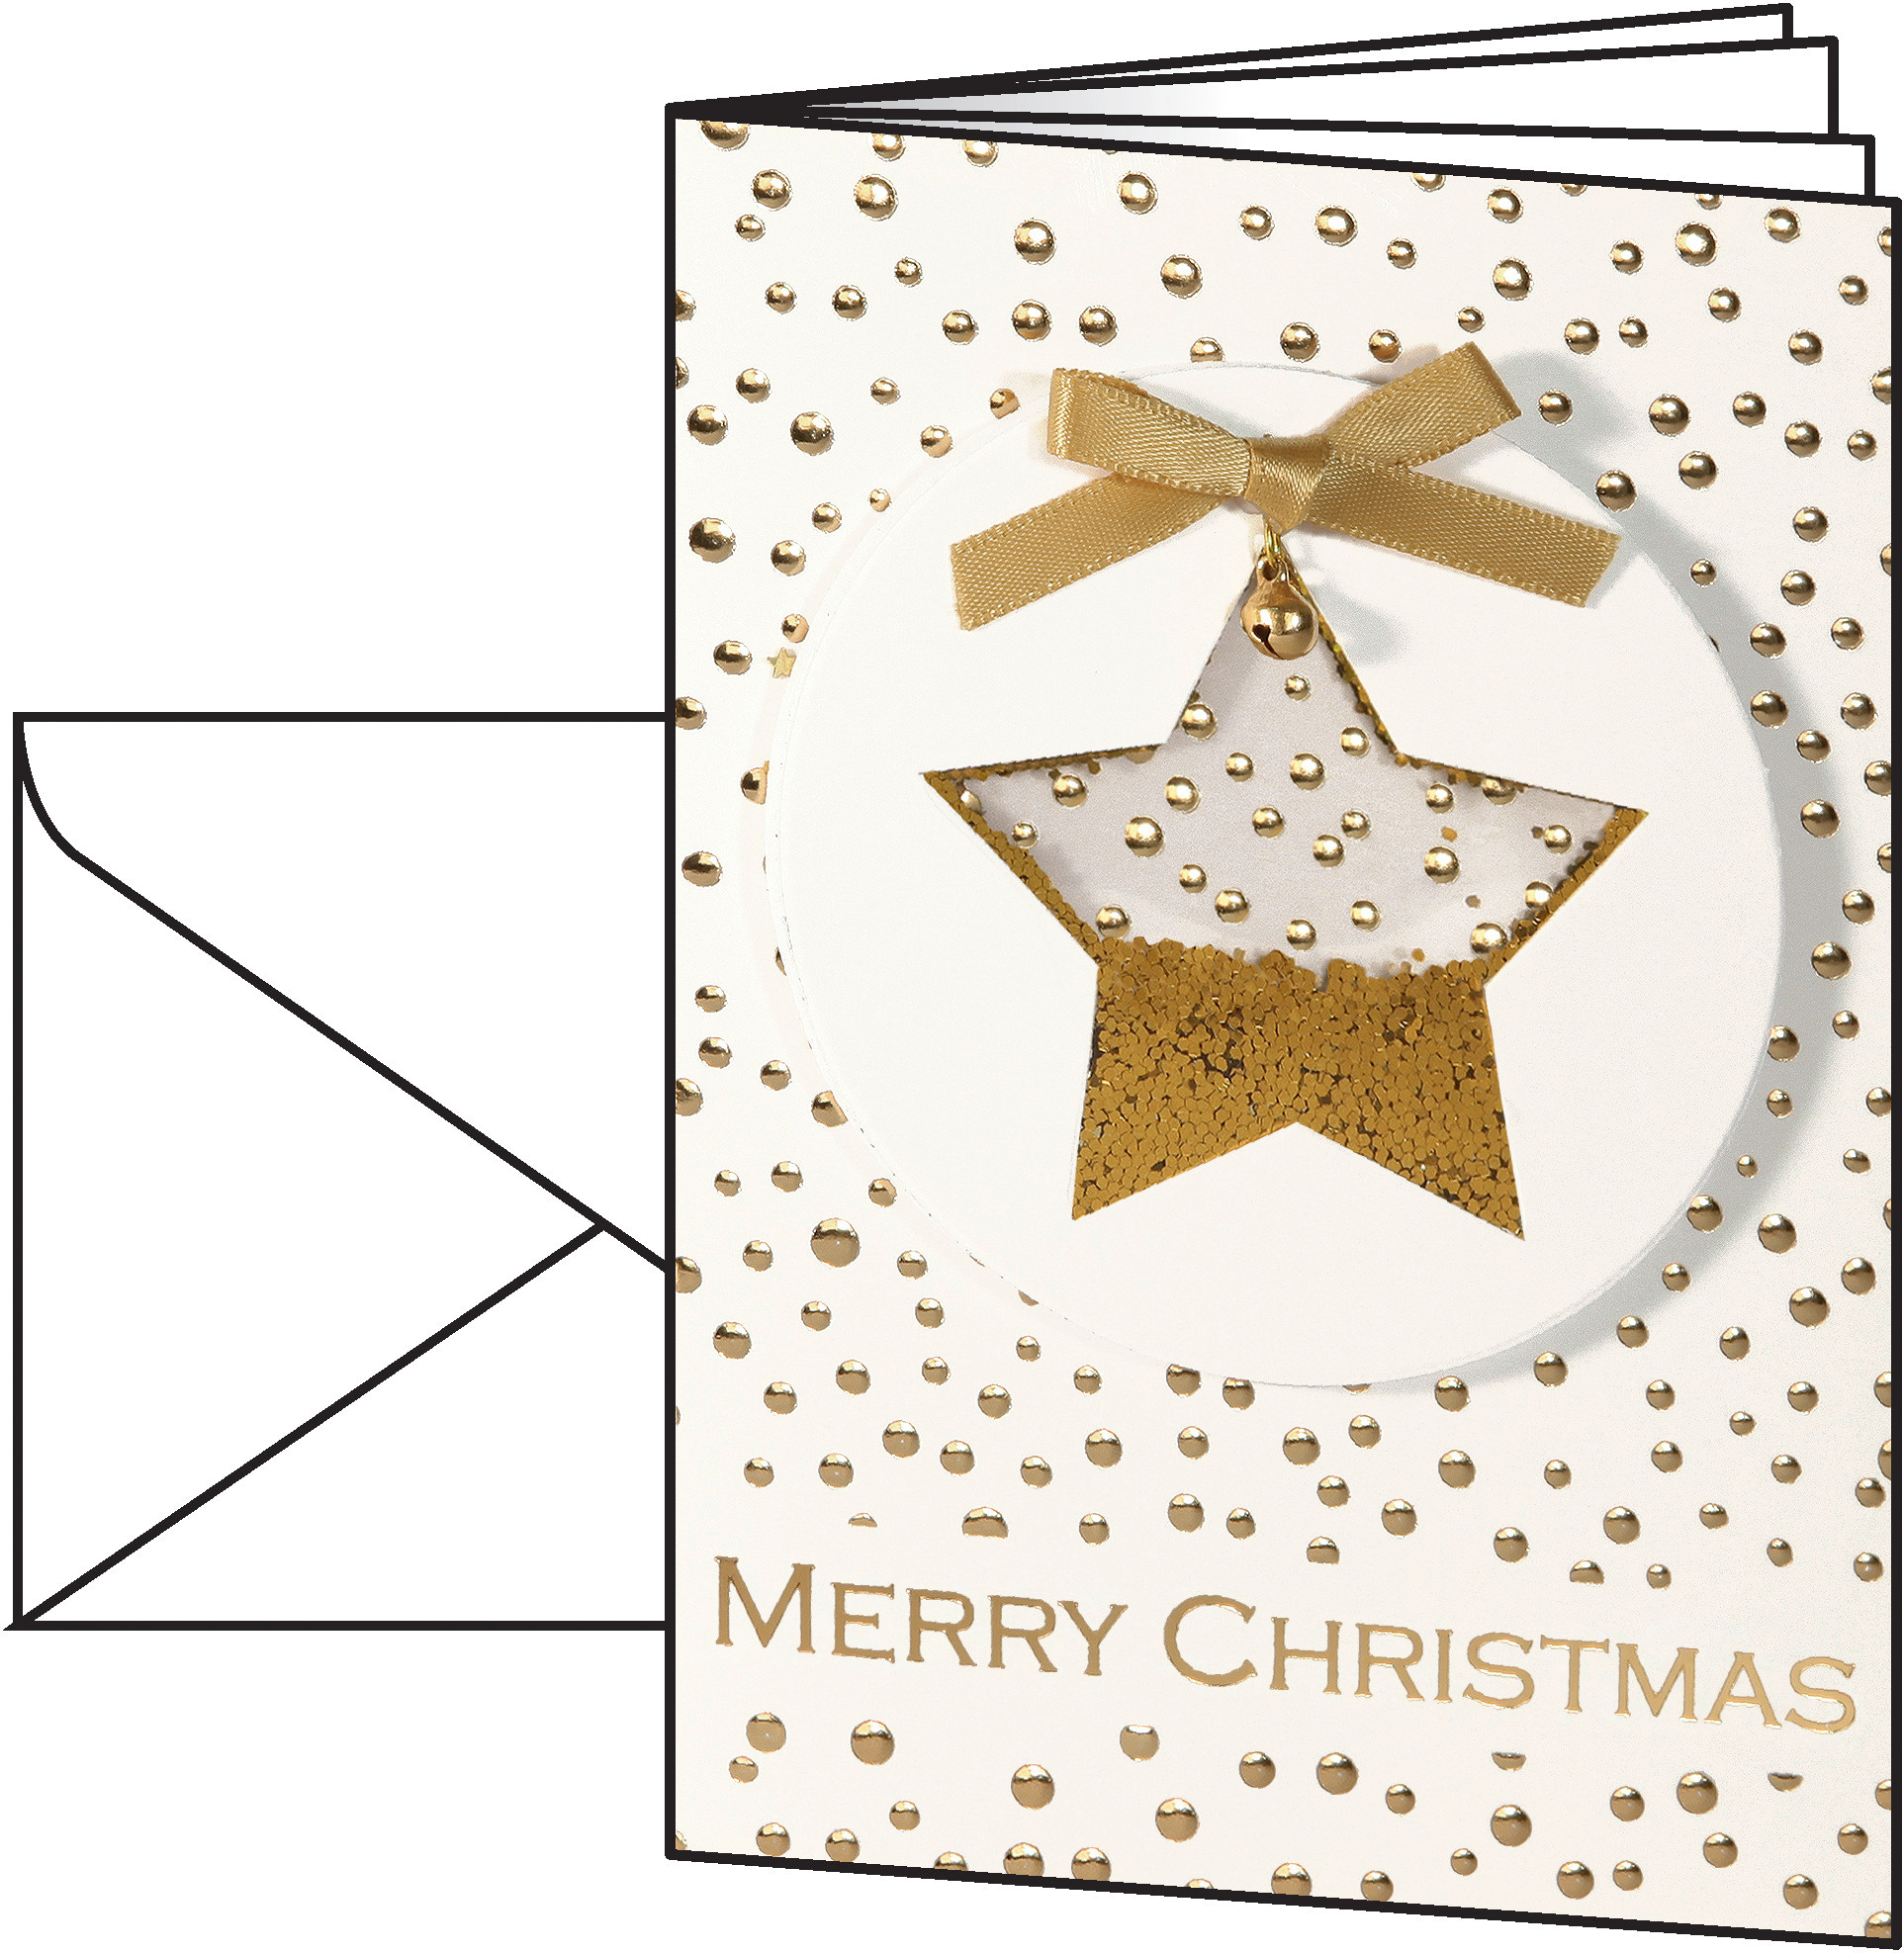 Sigel Weihnachtskarte Confetti Star, Verpackungseinheit: 10 Stück, Farbe: Gold; Weiss, Material: Karton, Produkttyp: Karten